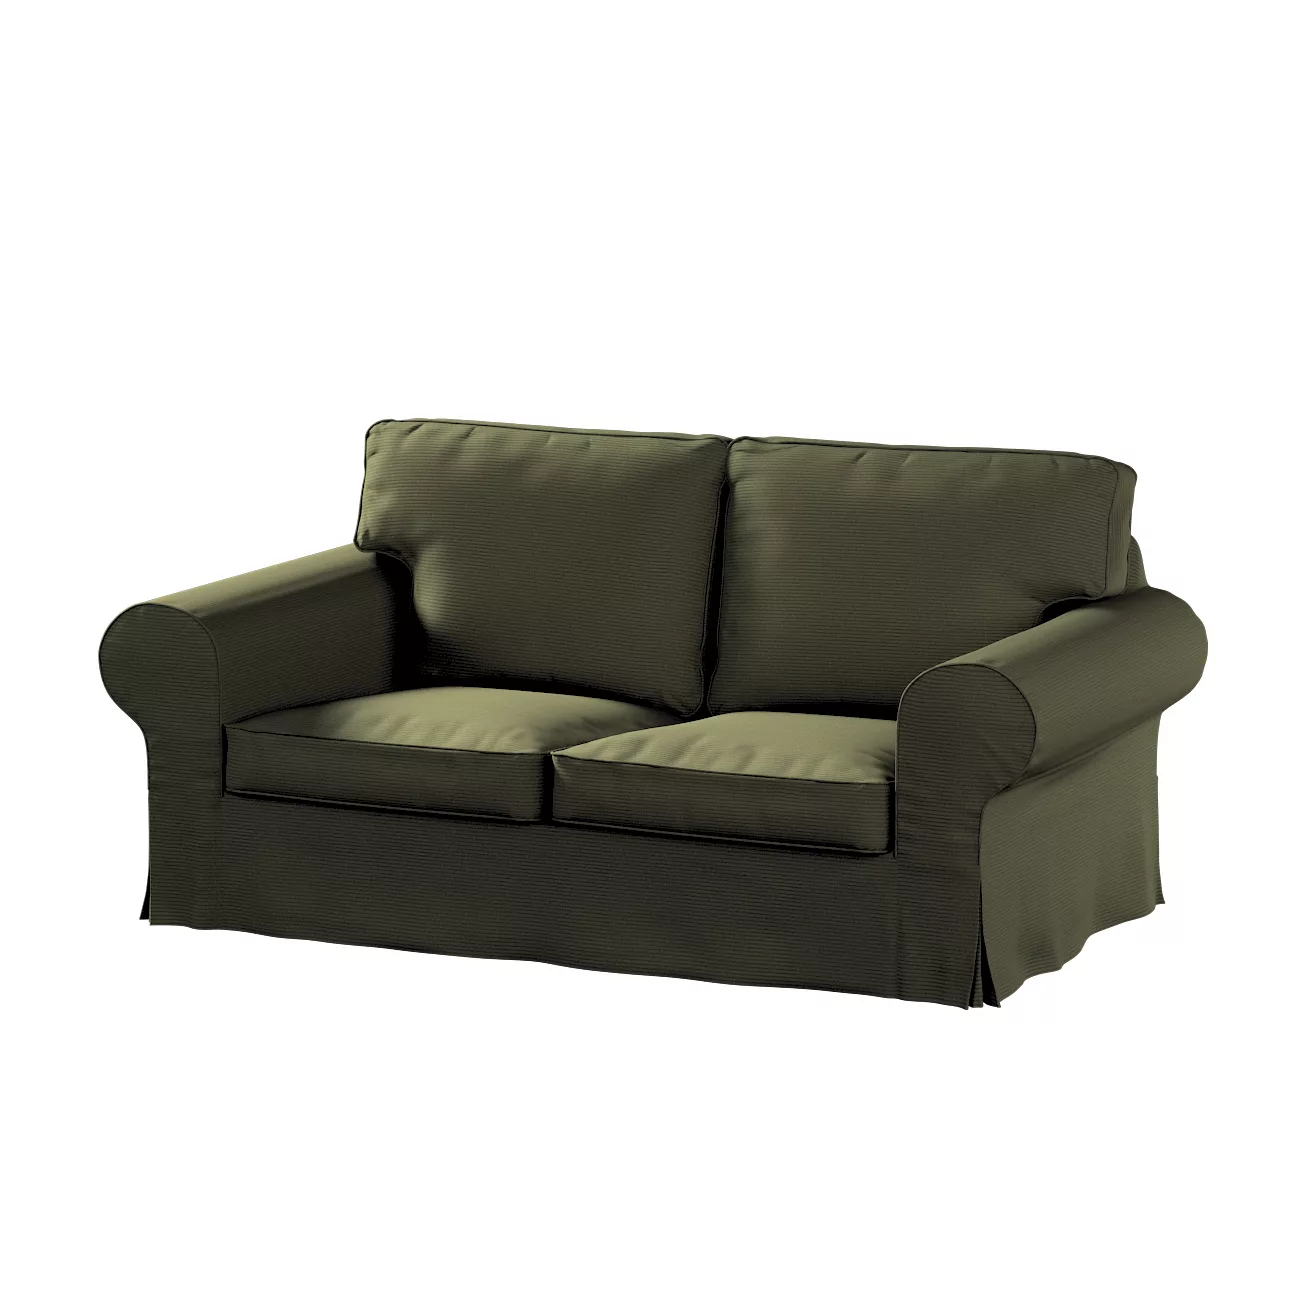 Bezug für Ektorp 2-Sitzer Schlafsofa NEUES Modell, olivgrün, Sofabezug für günstig online kaufen